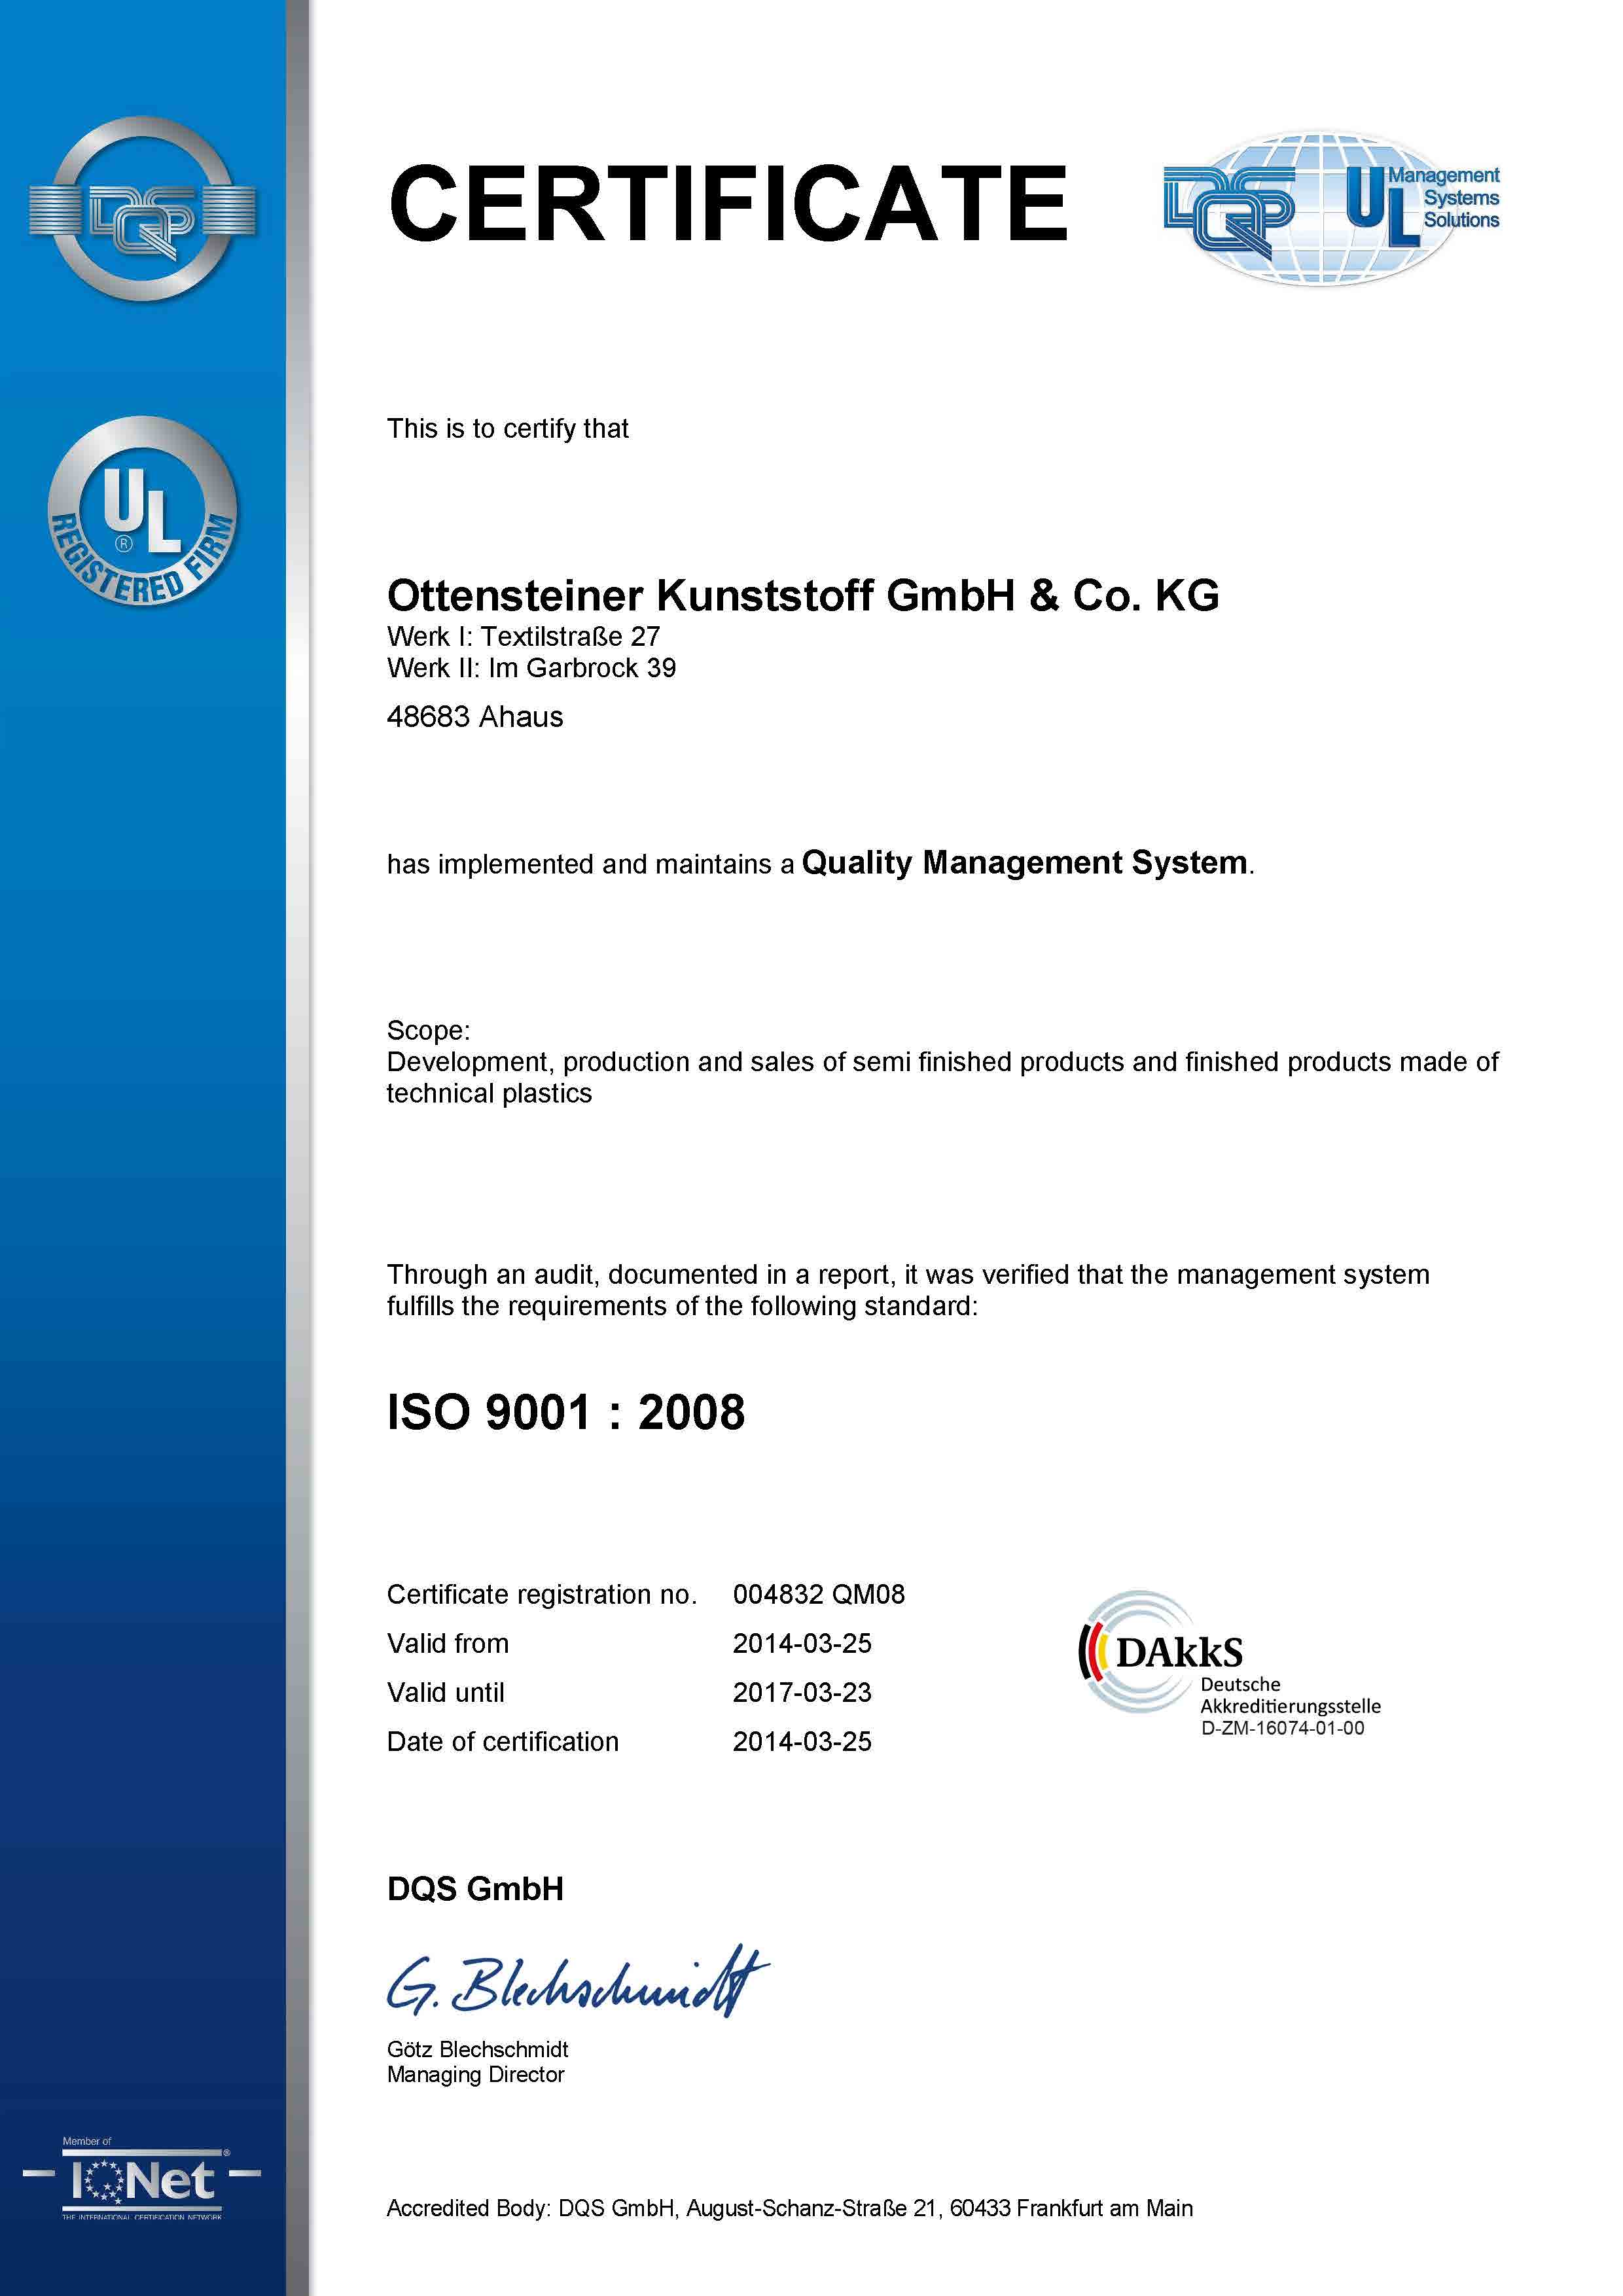 004832 - Ottensteiner Kunststoff GmbH & Co. KG - certificate - Englisch - 2014-03-25 - QM08